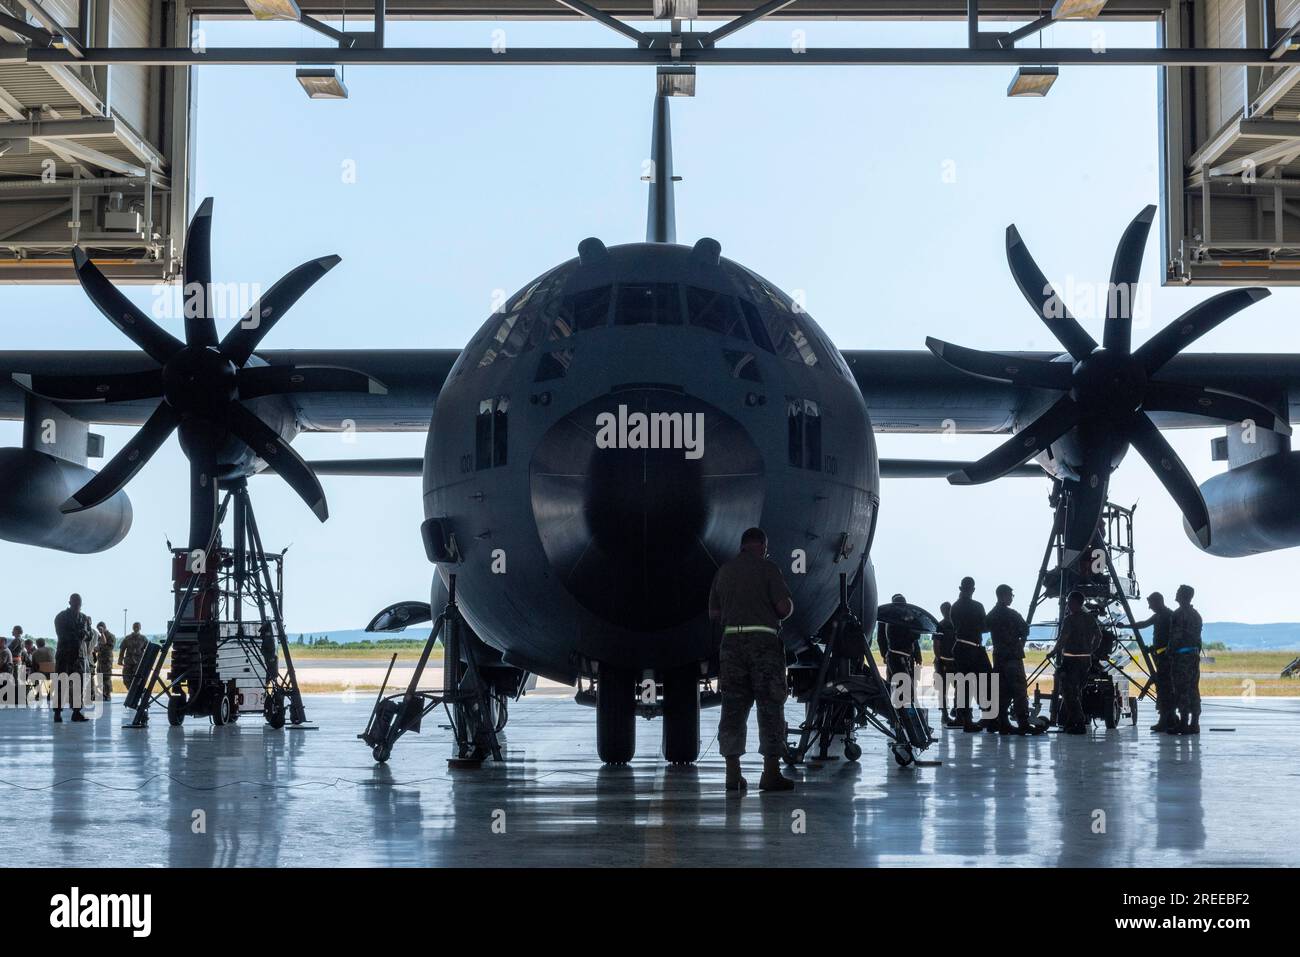 EIN US-AMERIKANISCHER Air Force C-130 Hercules parkt am 4. Juni 2023 in einem Hangar zur Wartung in Deutschland. Air National Guard Foto von Staff Sergeant Paul Helmig Stockfoto